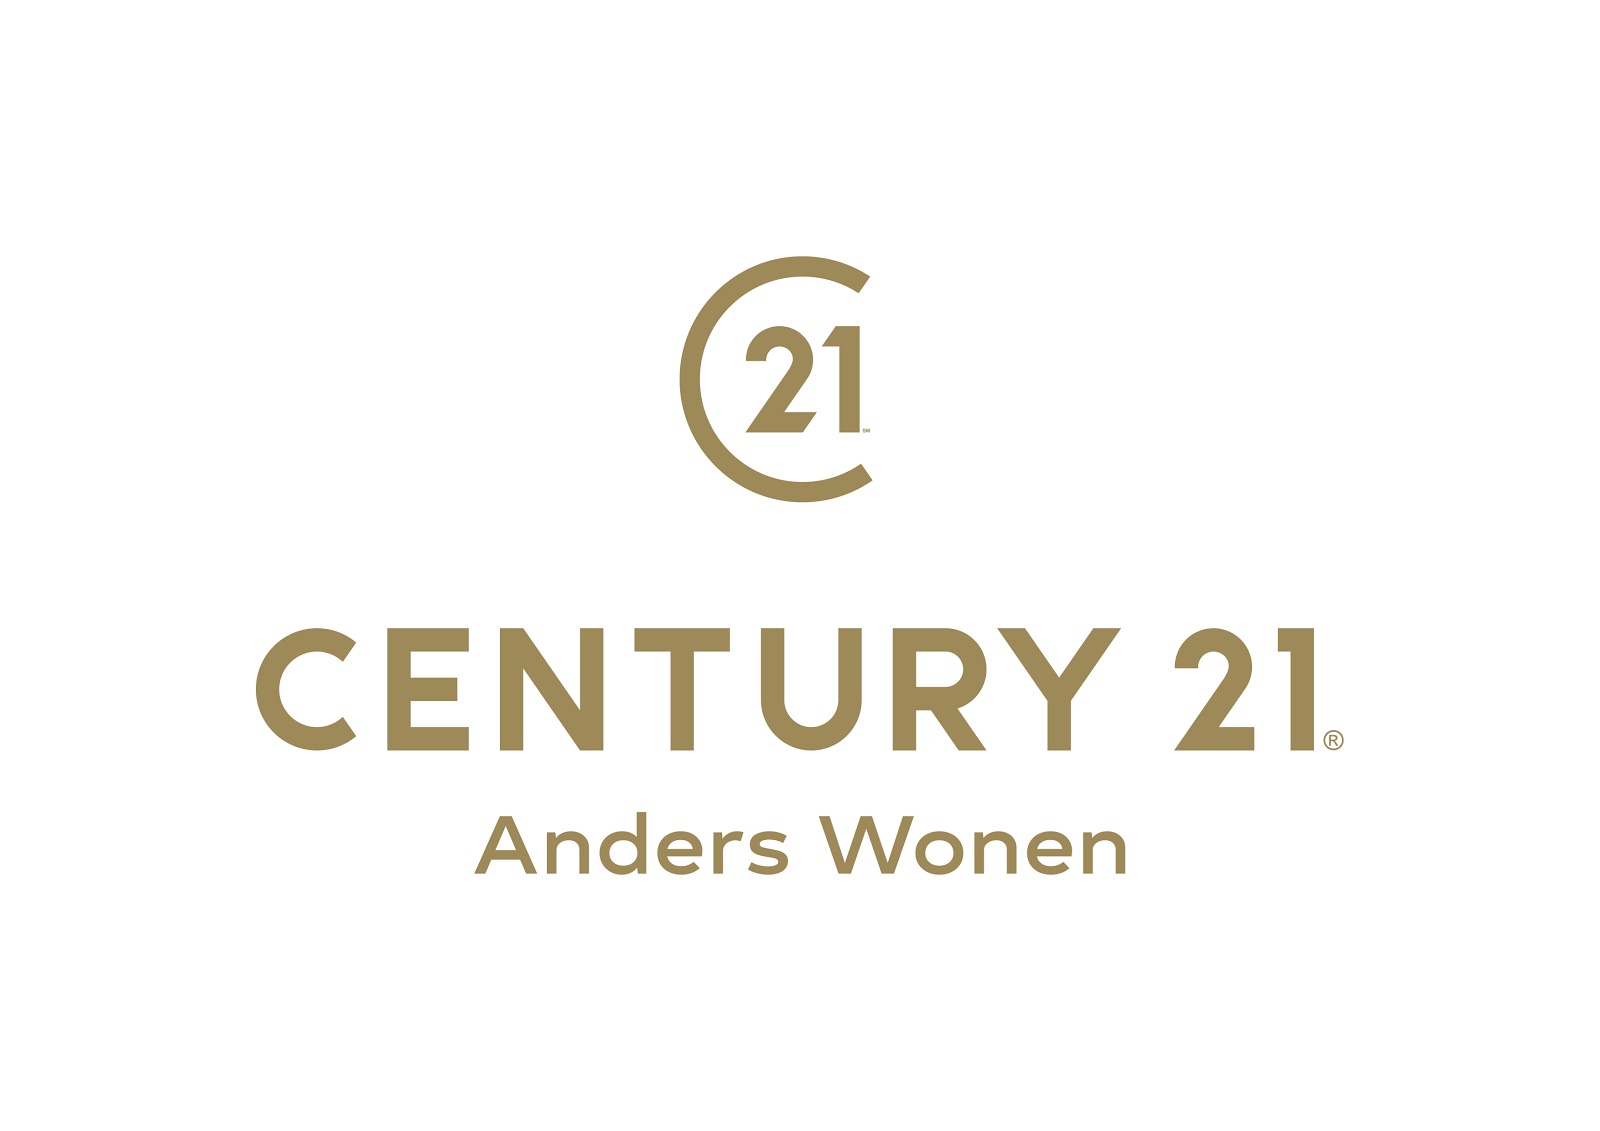 CENTURY 21 Anders Wonen Puurs